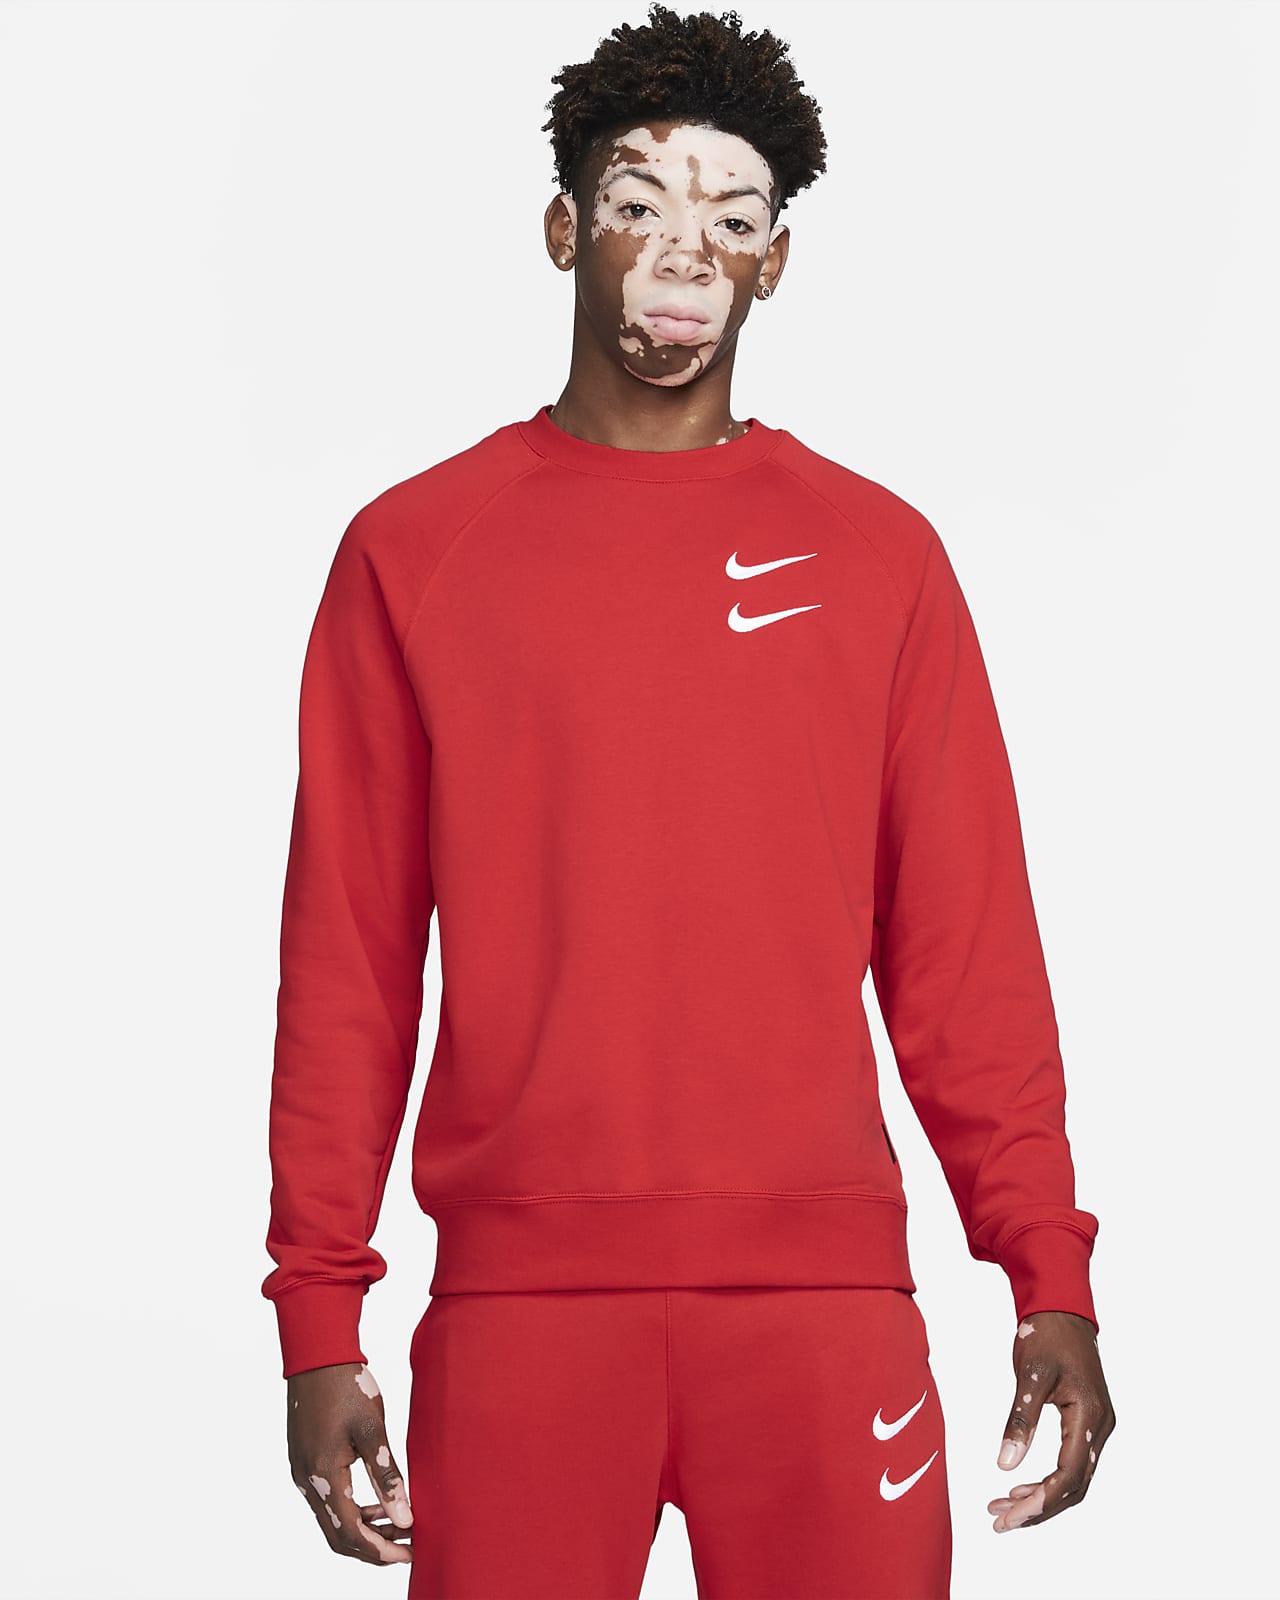 Detail Nike Swoosh Images Nomer 4